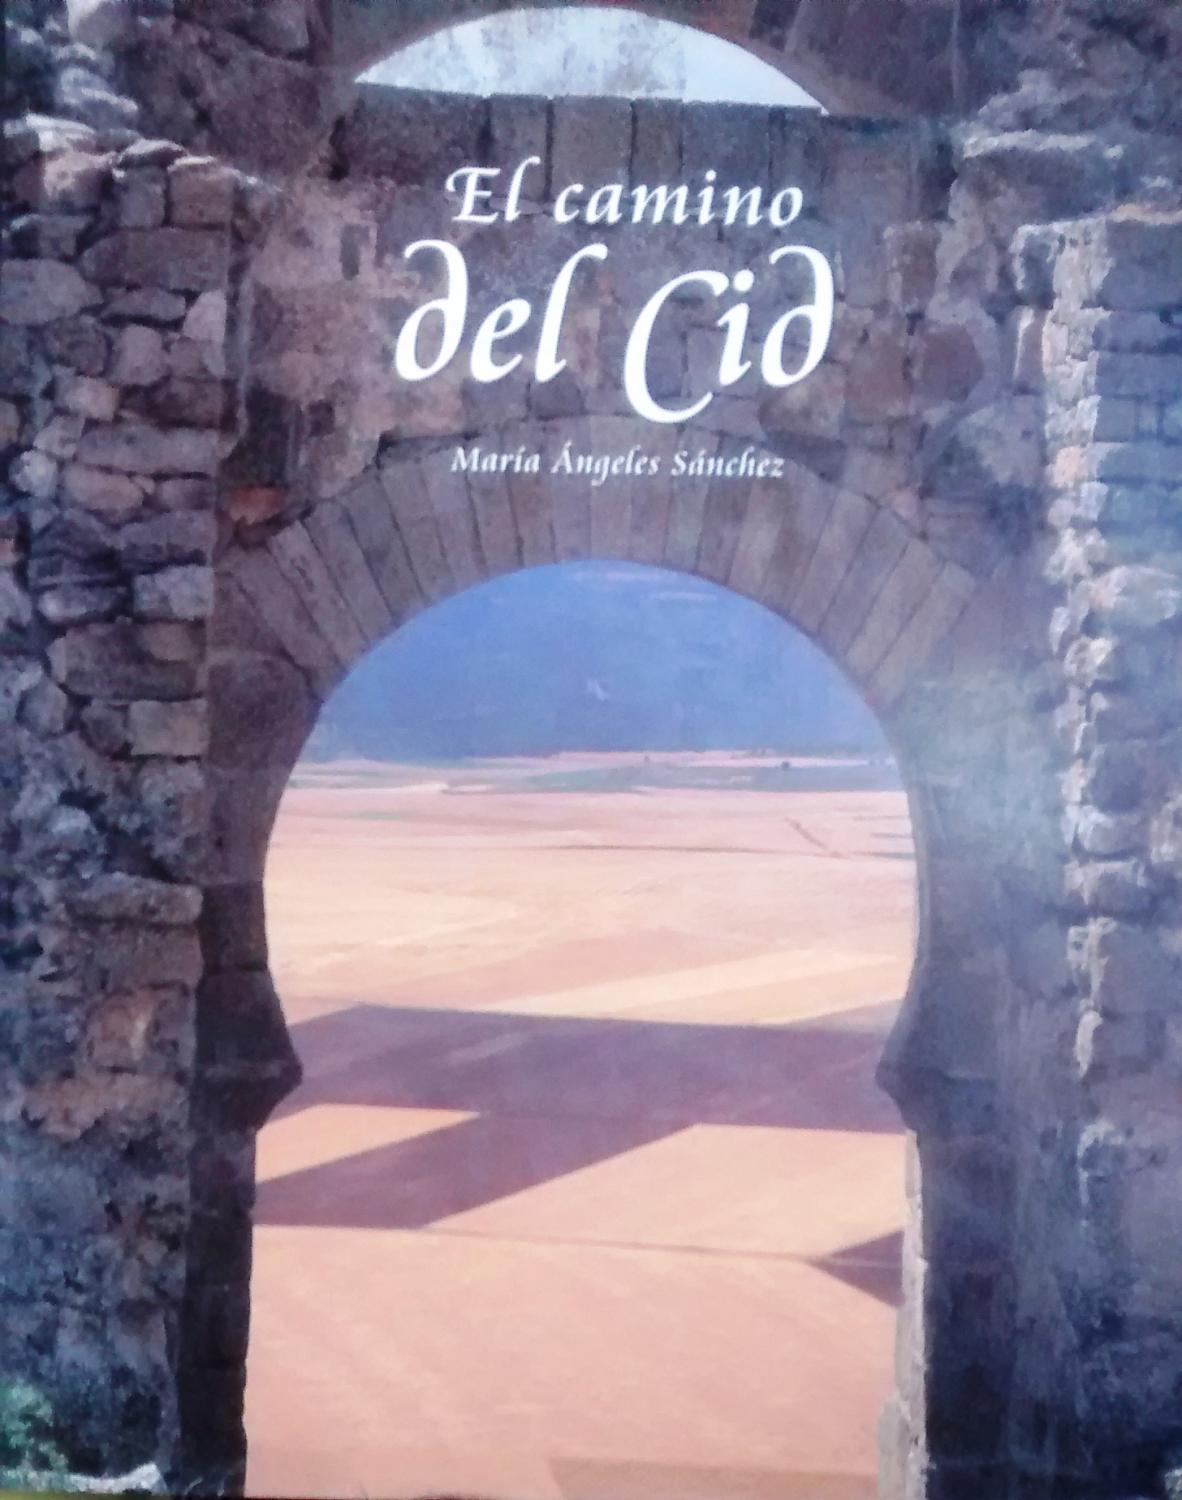 El camino del Cid - Sánchez, María Angeles